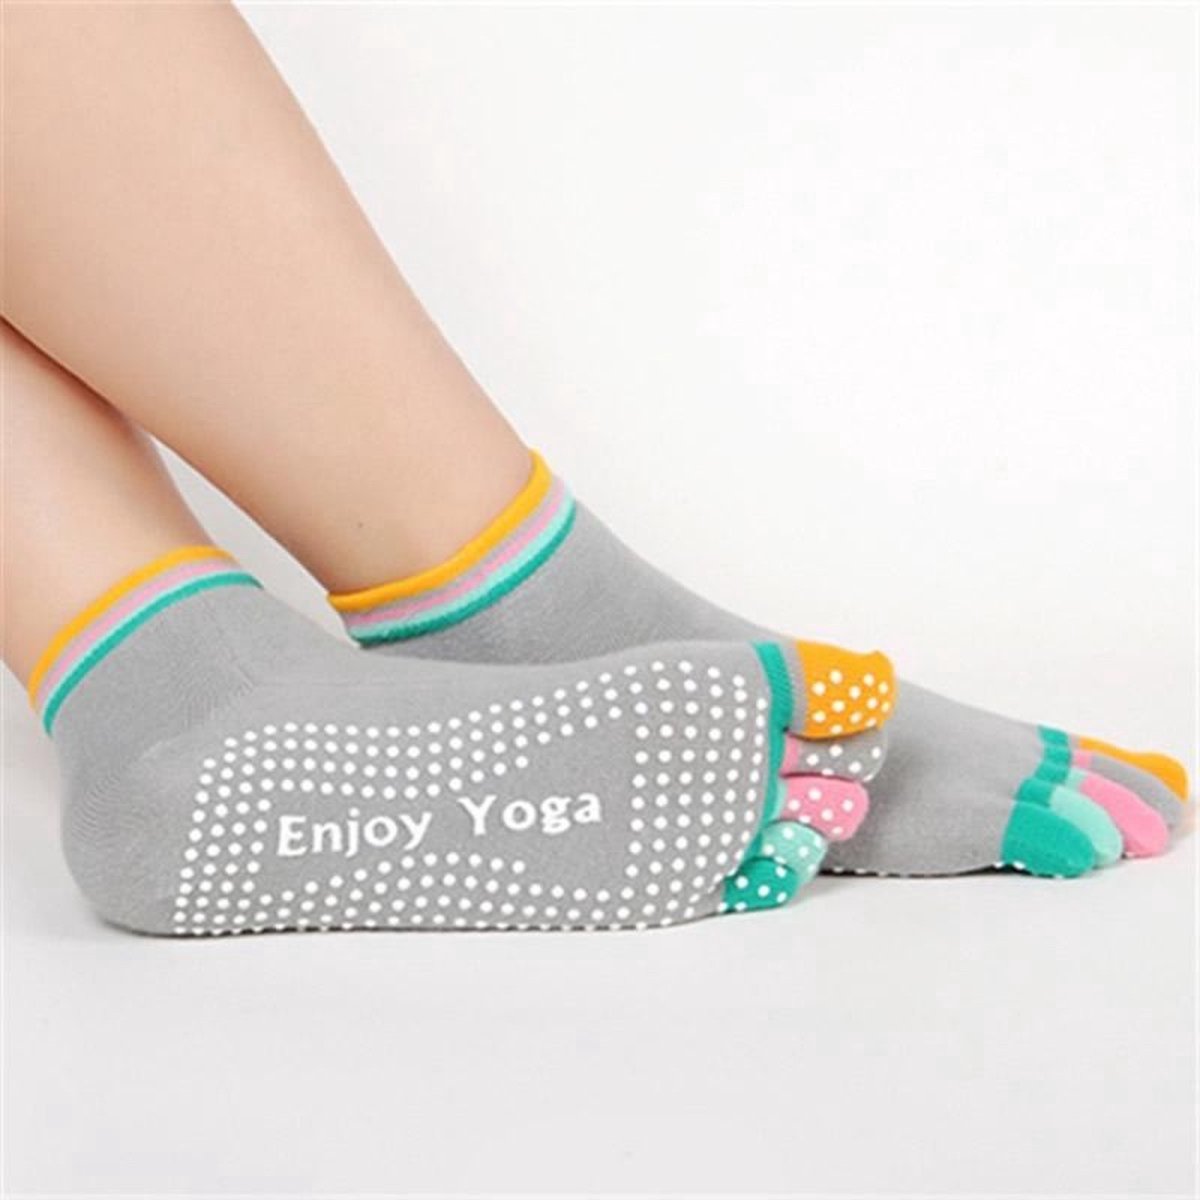 CHPN - Yogasokken - Sportsokken - Yoga - Antislip - Grijs met gekleurde tenen - Vrolijke gekleurde sokken - Sokken - Yogasok - Teensokken - 36-39